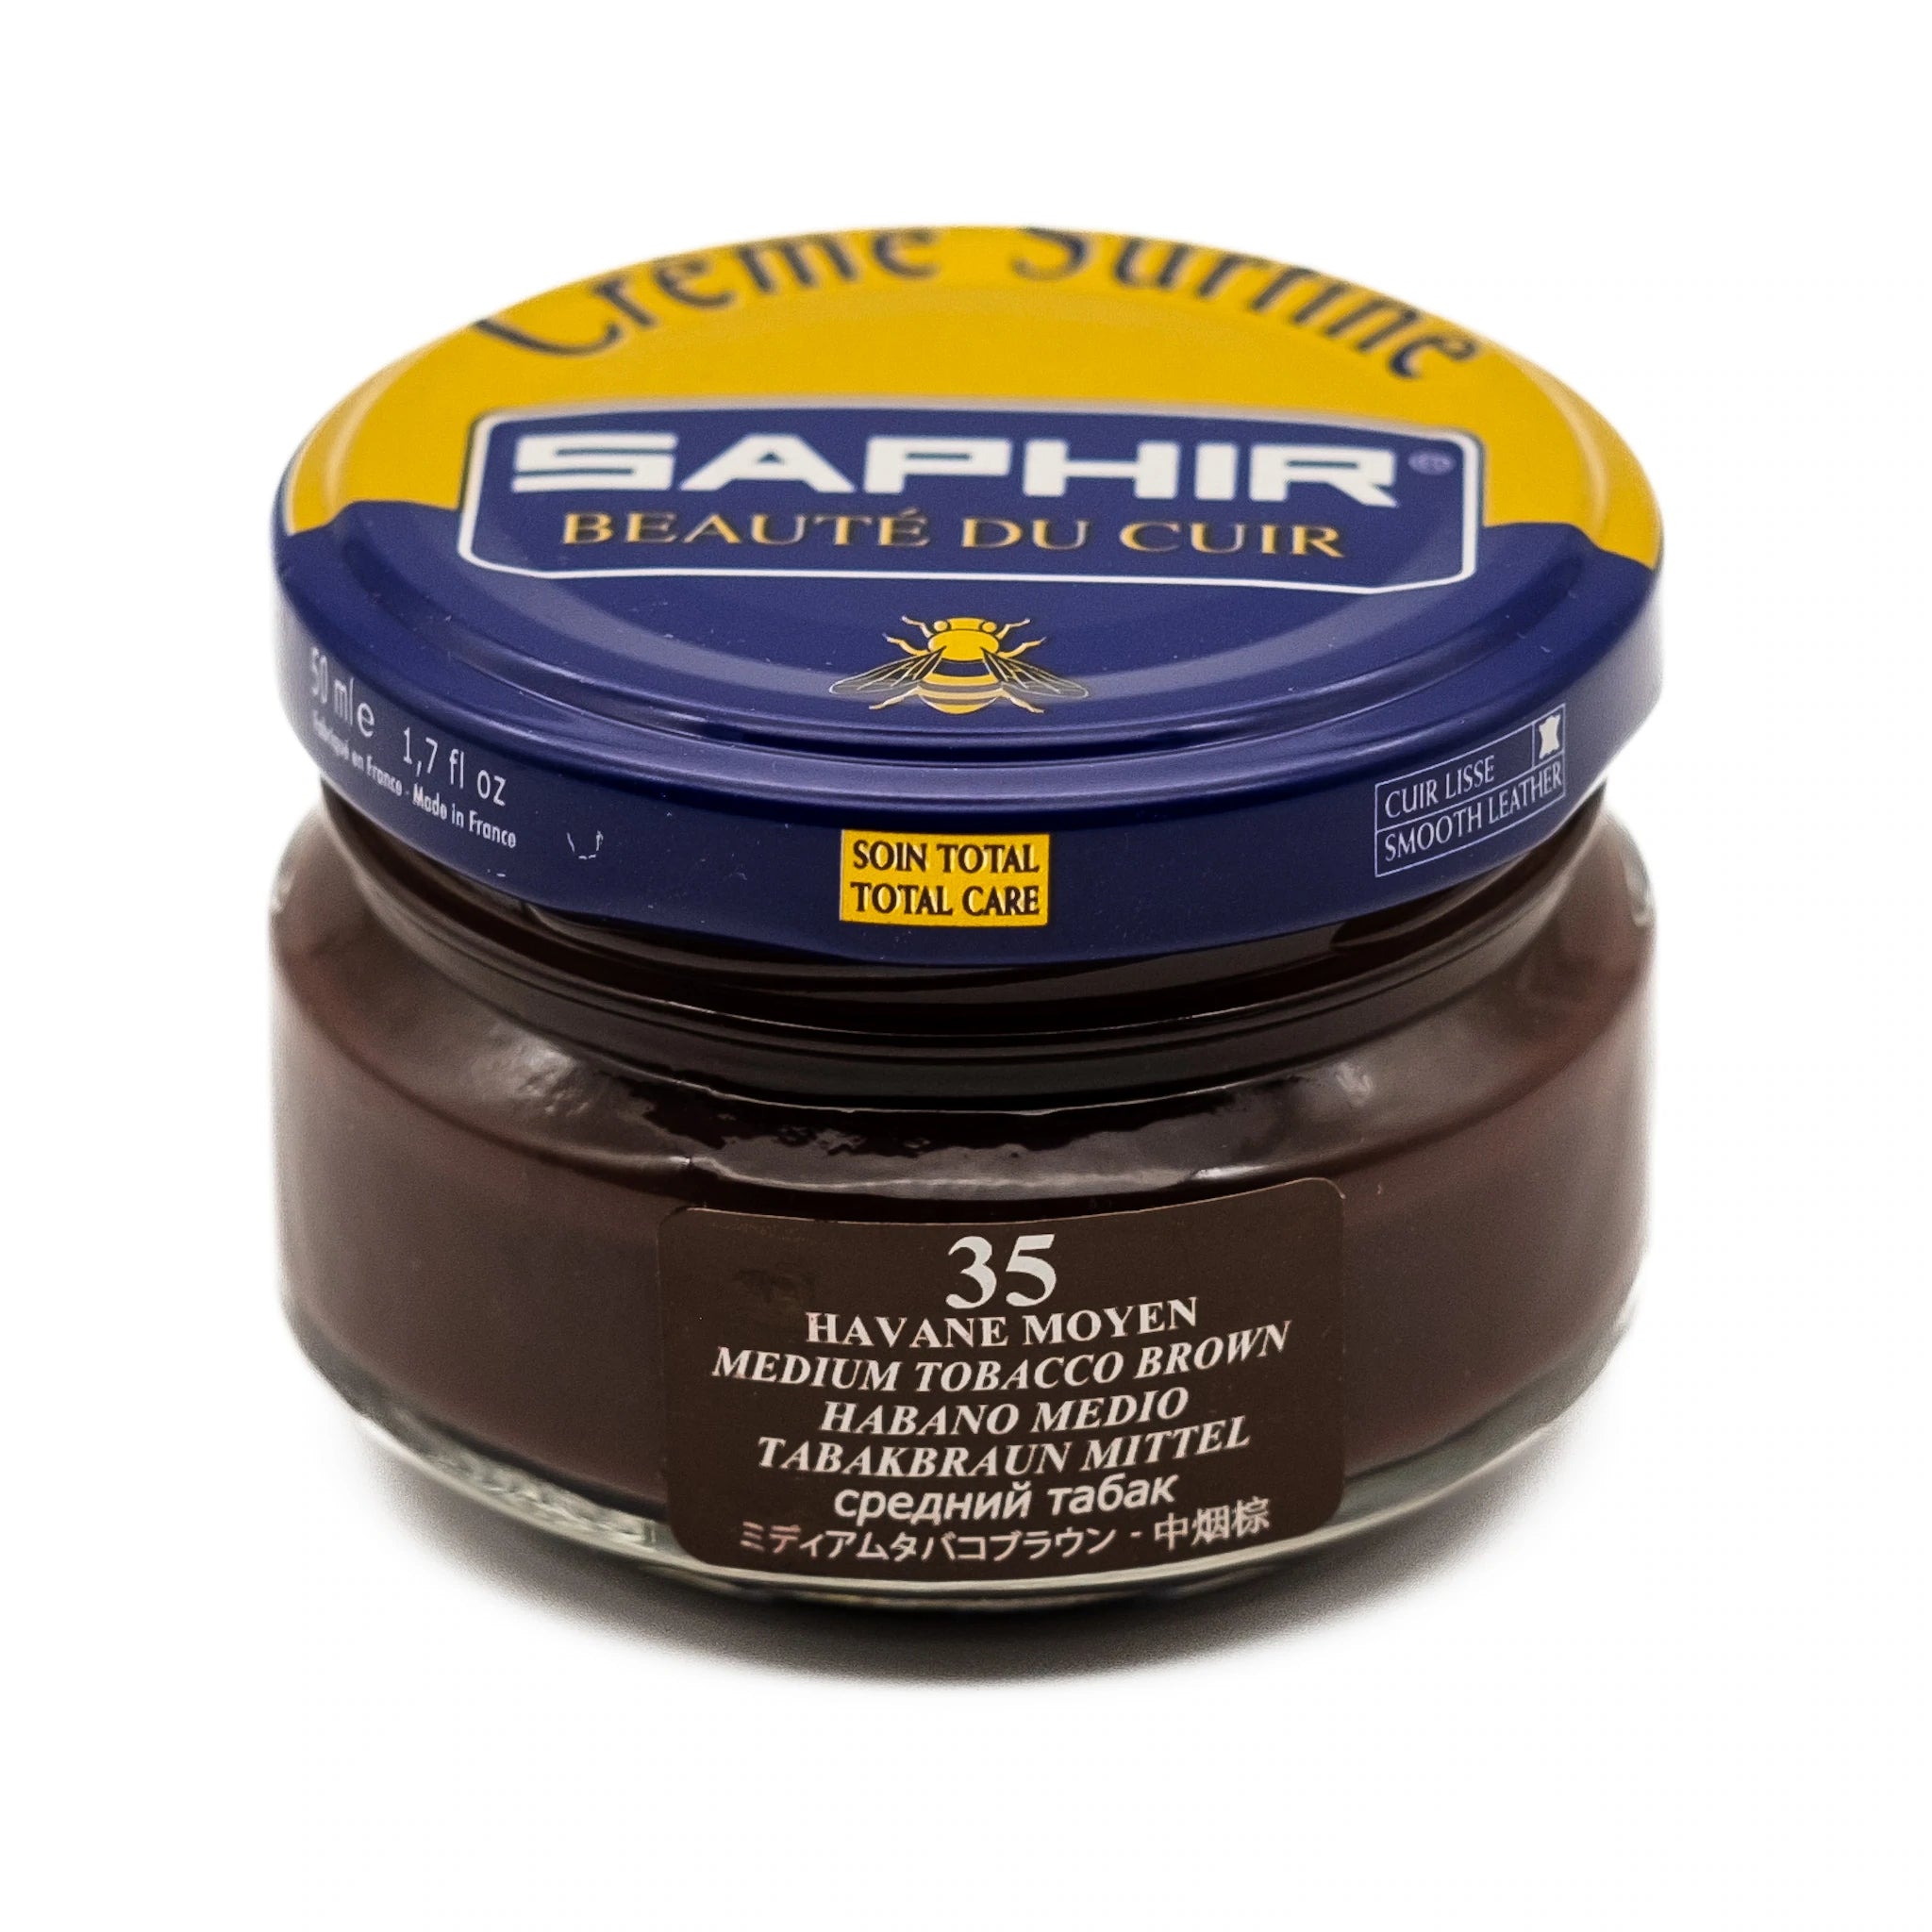 Saphir Beauté du Cuir Crème Surfine Schoencrème 50ml - Quality Shop